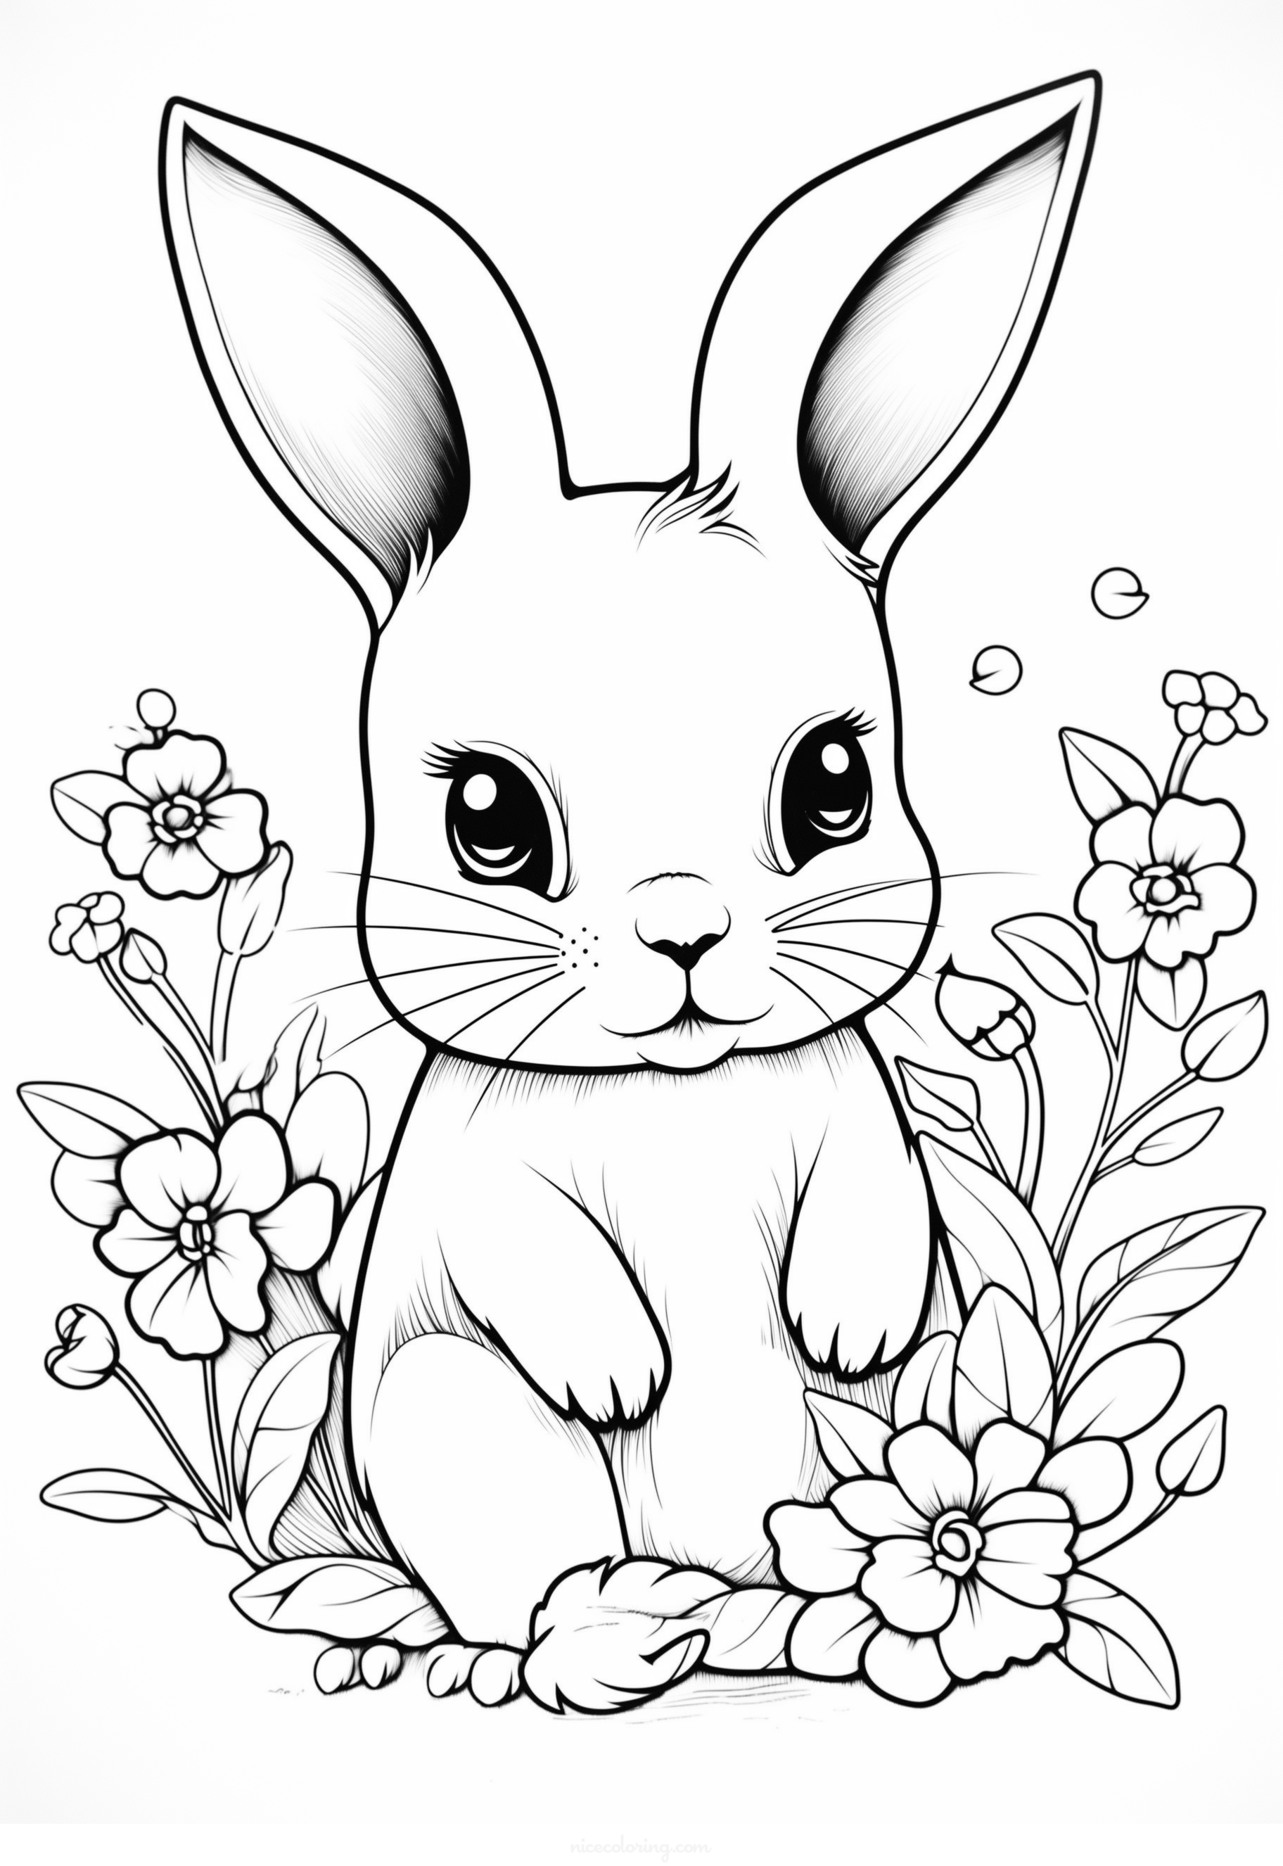 Uma página de colorir de um coelho alegre cercado por várias flores